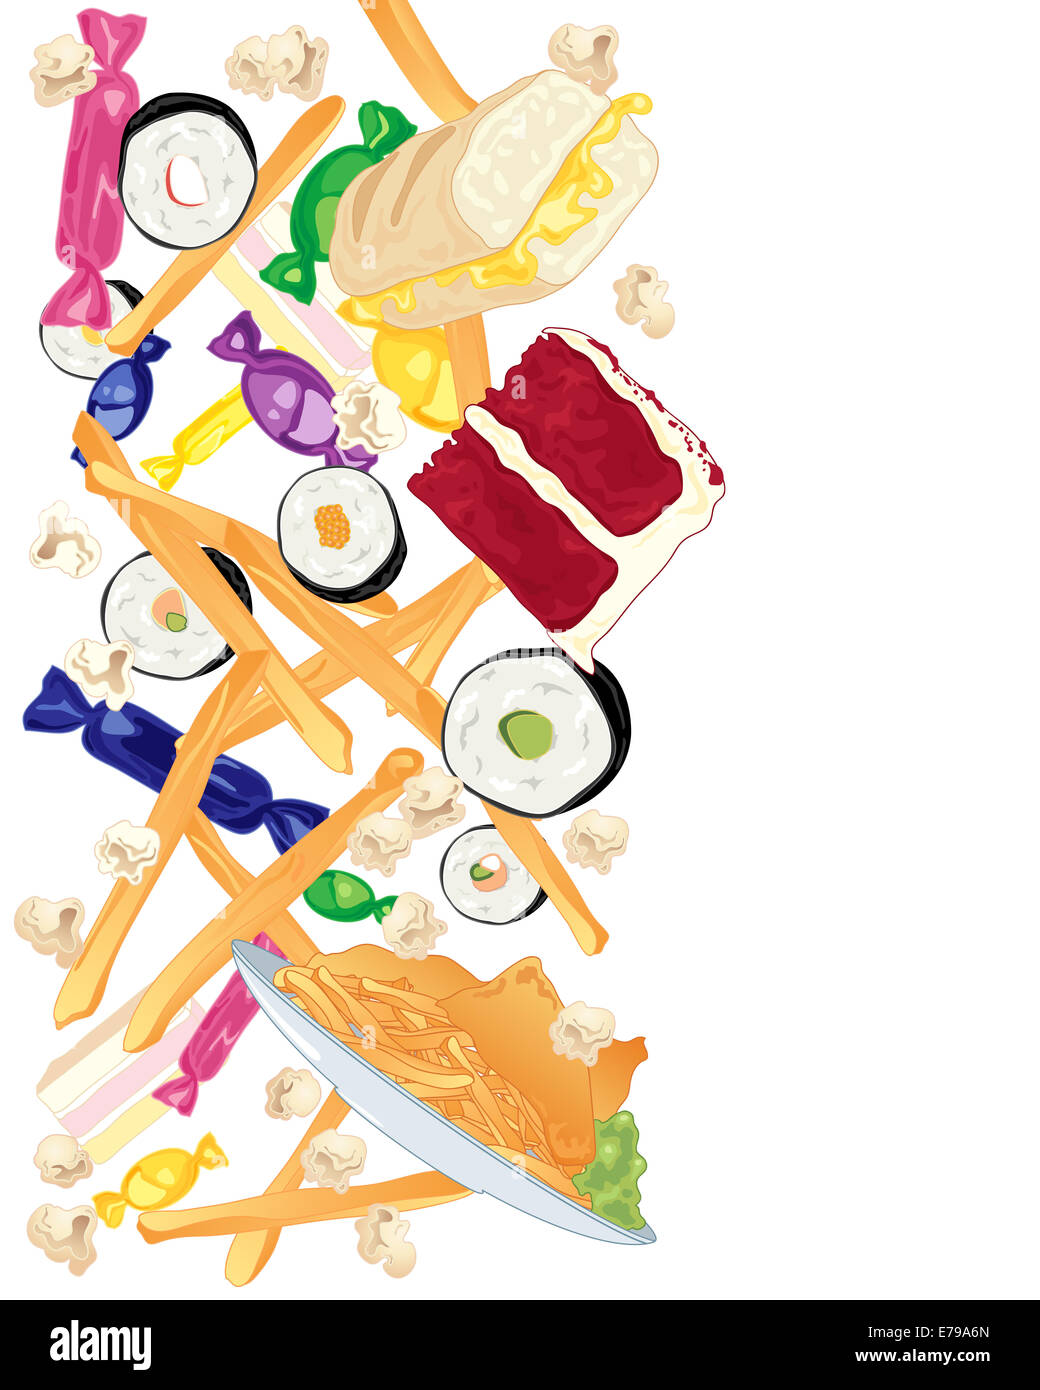 Une illustration d'une variété de délicieux bonbons y compris la restauration rapide plaquettes 'sushi rolls' 'velvet cake' et 'fish and chips' Banque D'Images